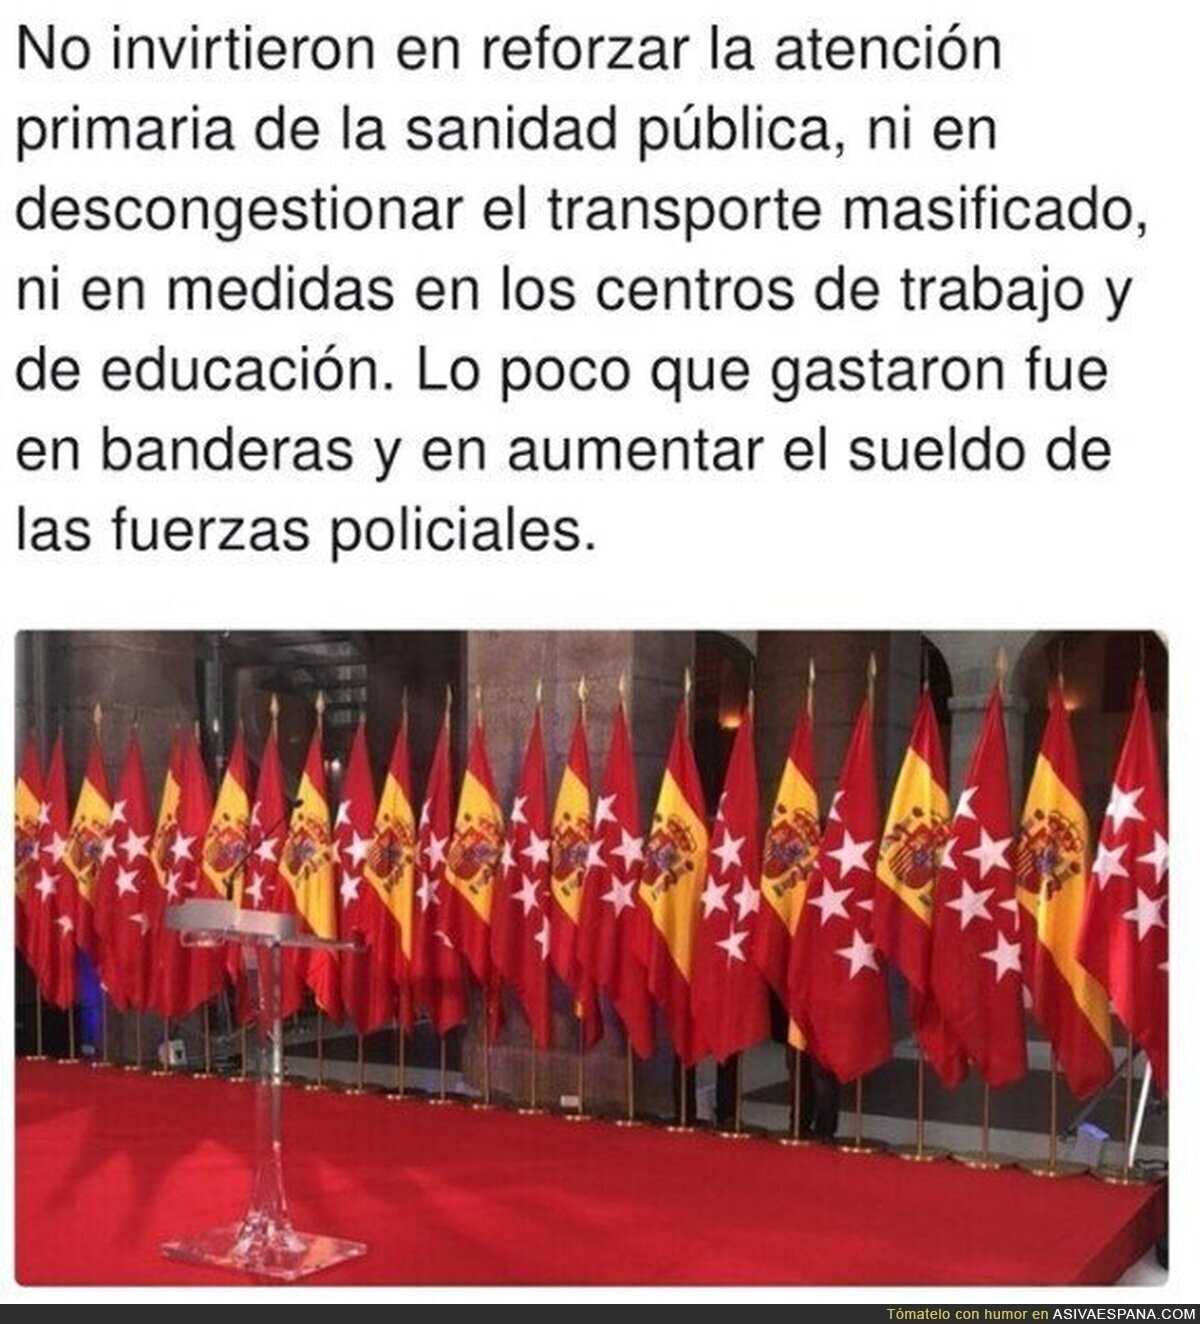 La inmunidad que crea si te rodeas de banderas de España